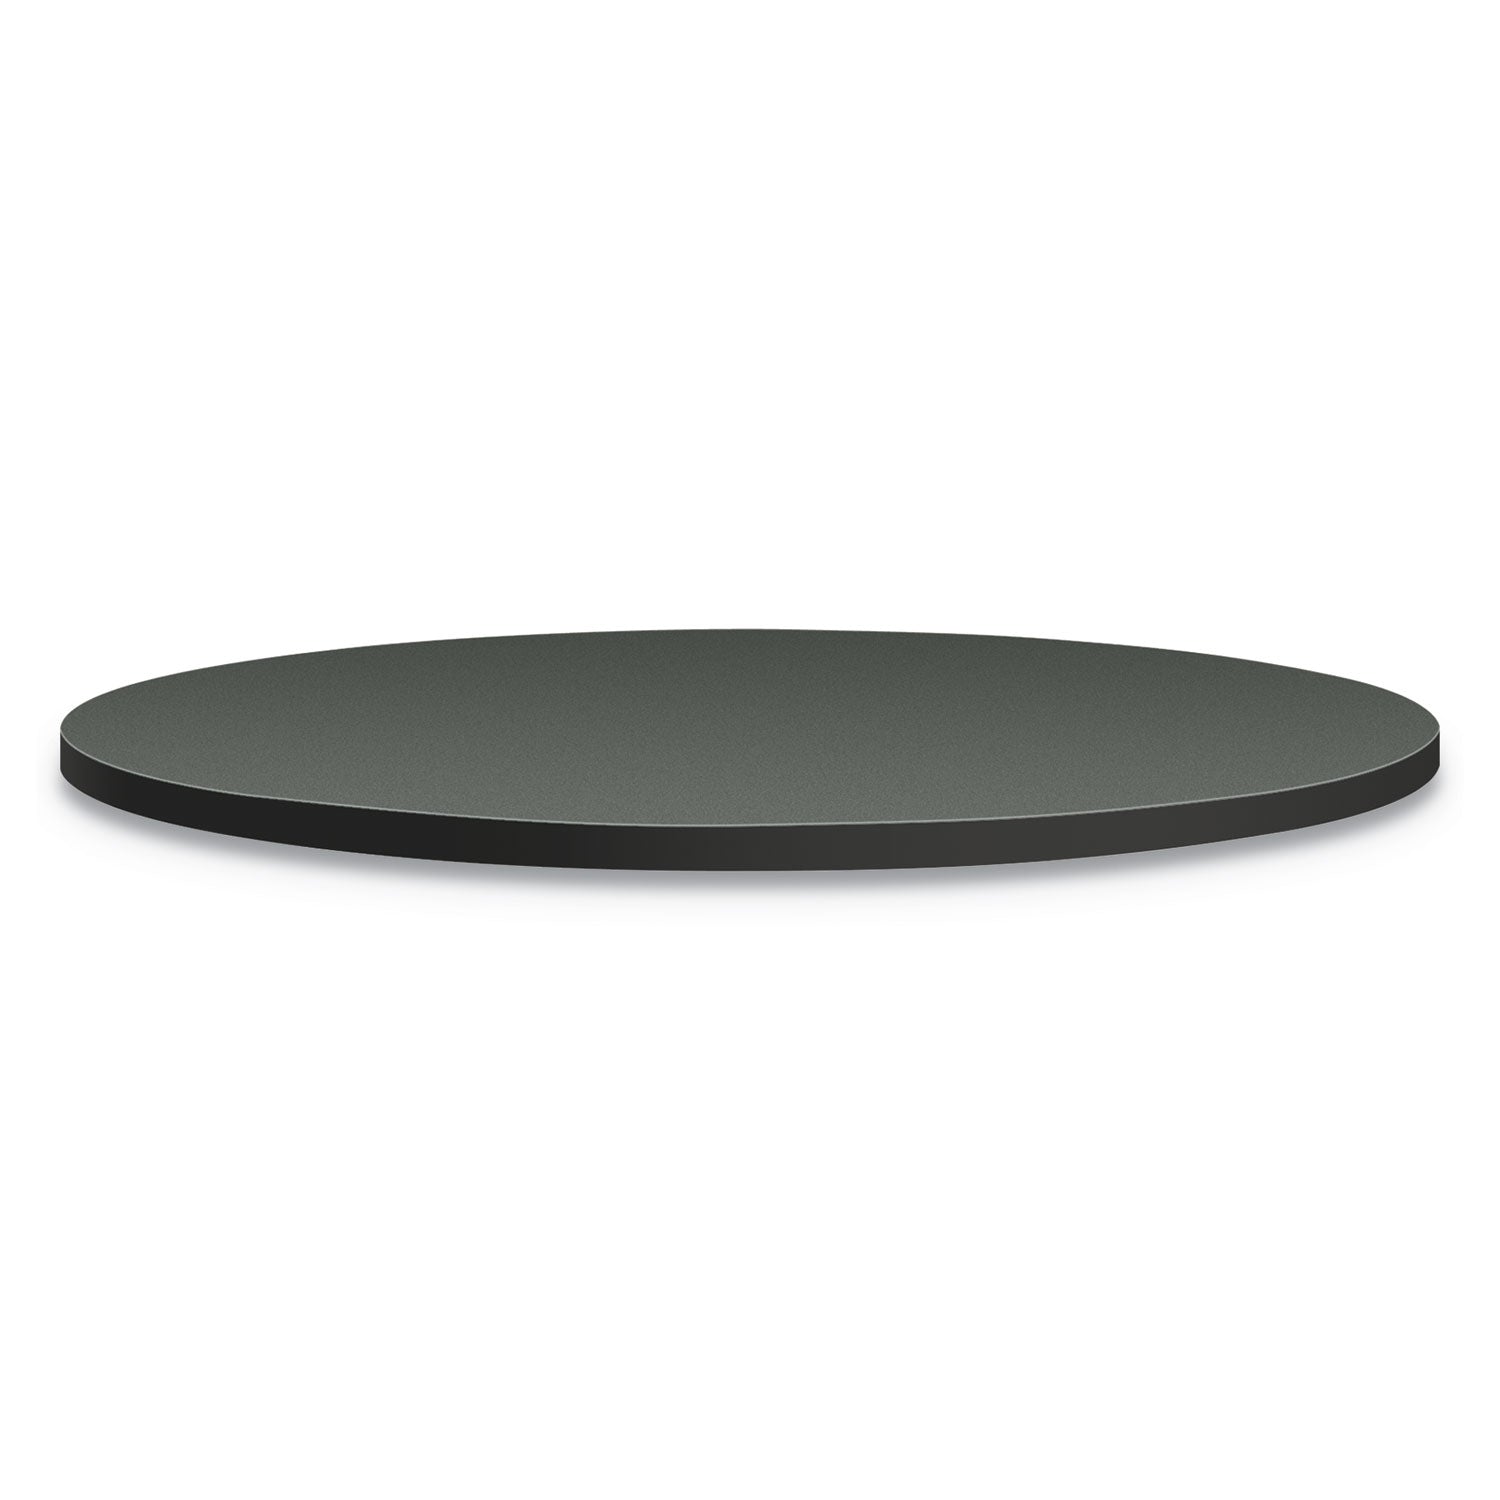 between-round-table-tops-30-diameter-steel-mesh-charcoal_honbtrnd30na9s - 1